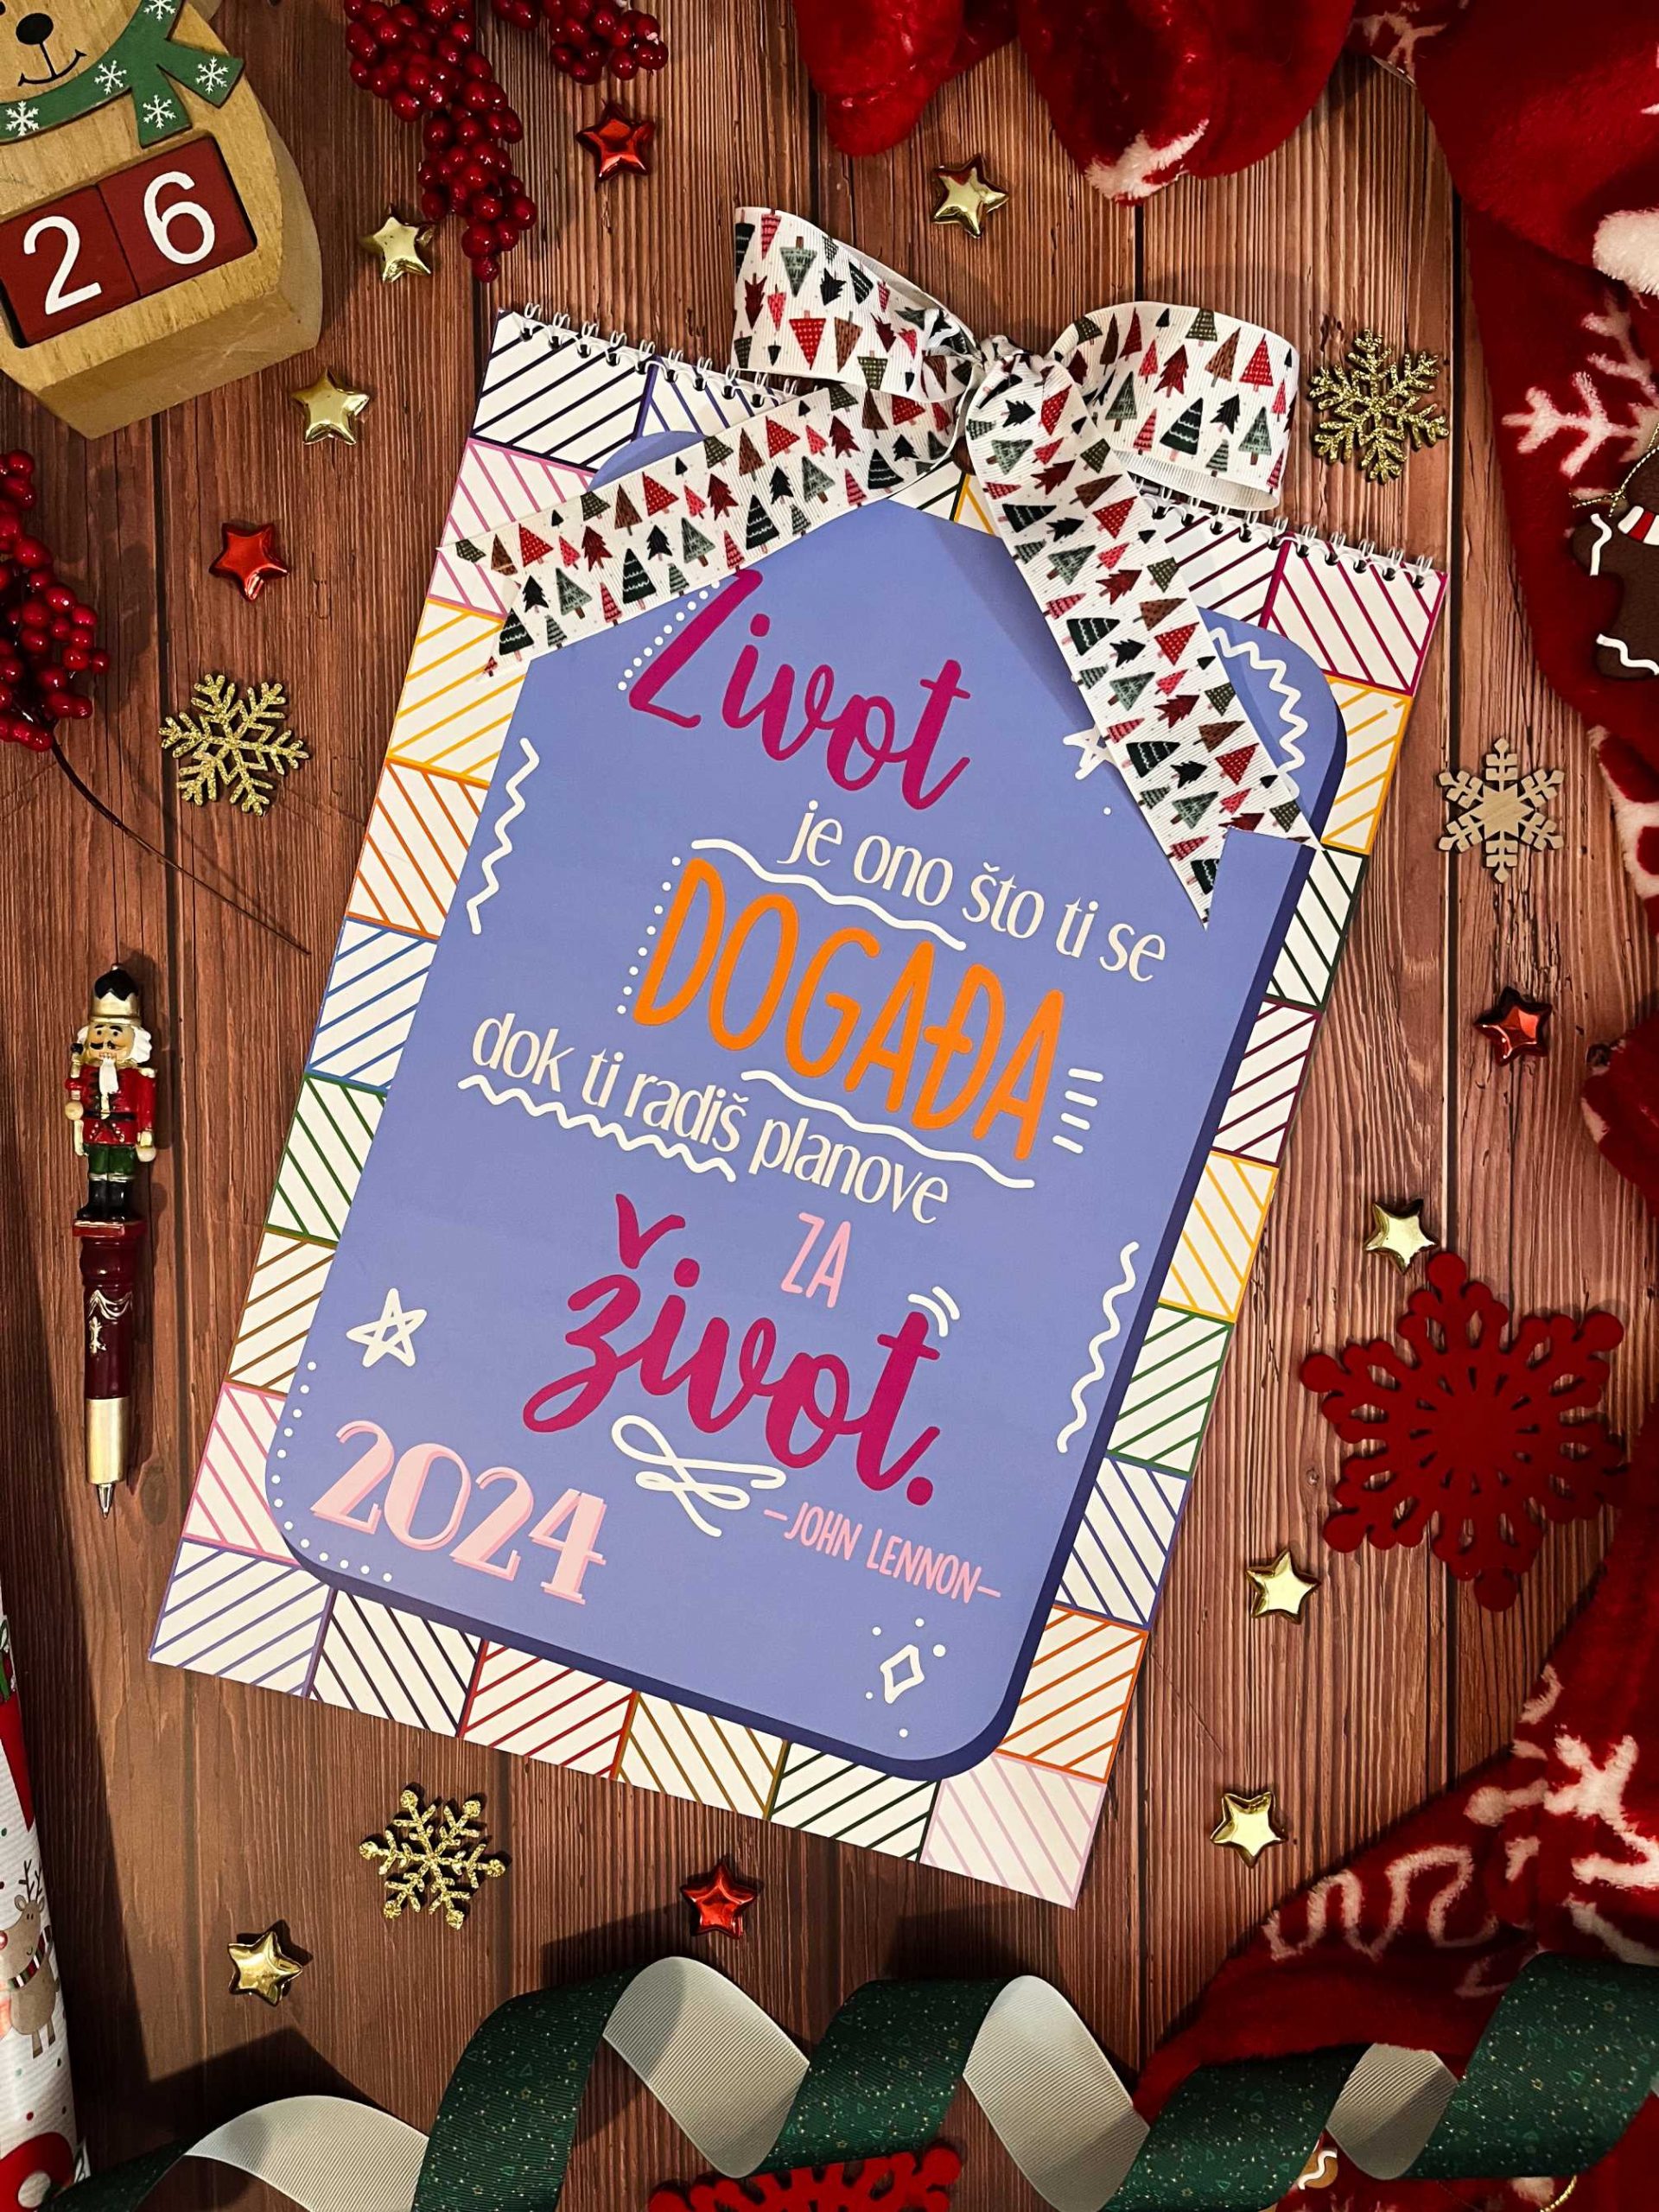 Kreativa: Puro Amor ima najljepše poklone za Božić!